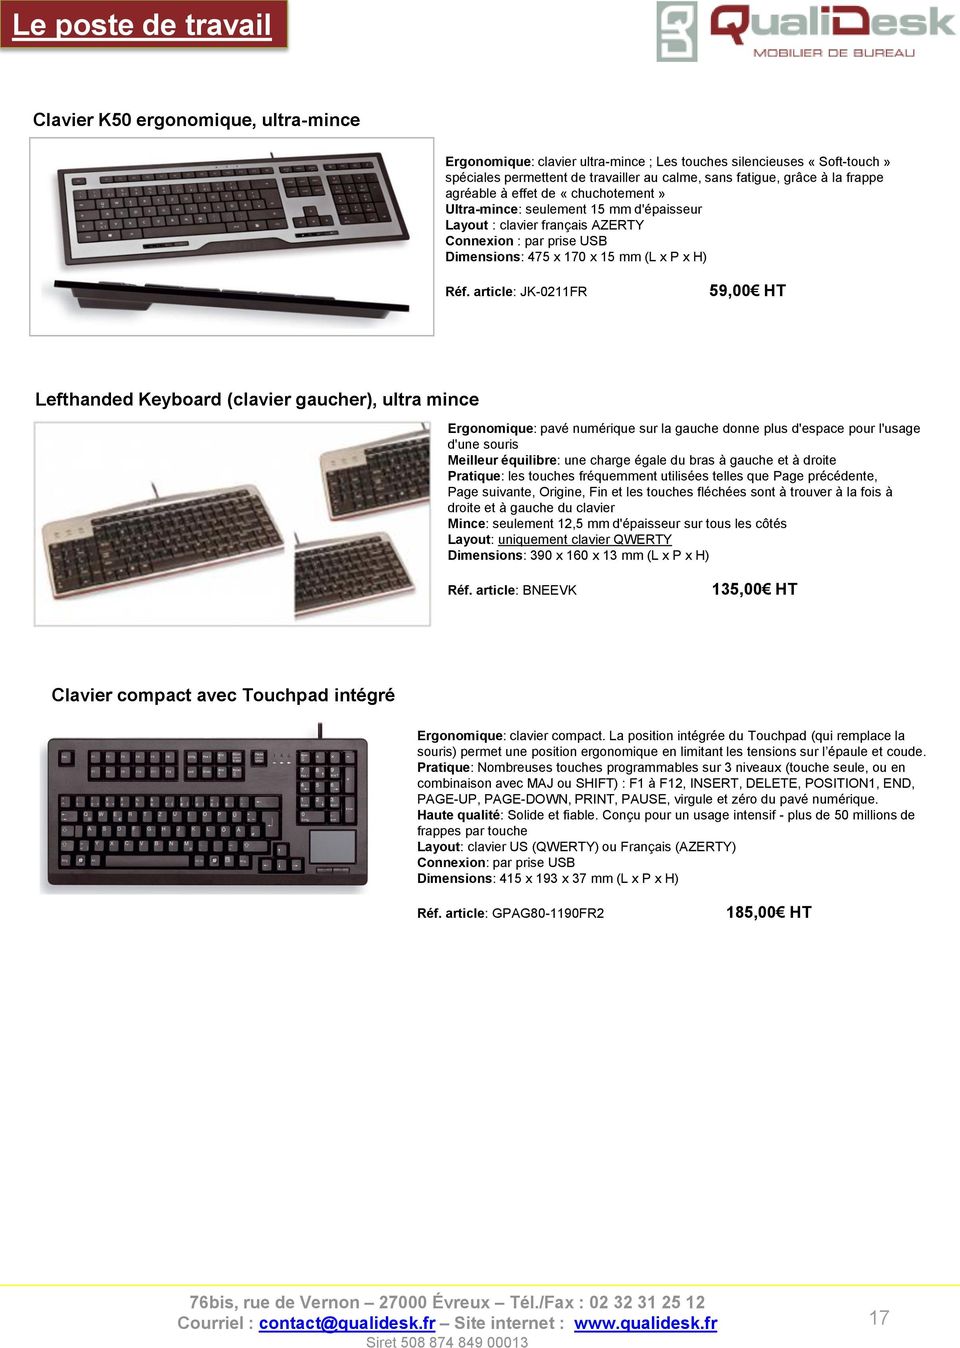 HT Lefthanded Keyboard (clavier gaucher), ultra mince Ergonomique: pavé numérique sur la gauche donne plus d'espace pour l'usage d'une souris Meilleur équilibre: une charge égale du bras à gauche et